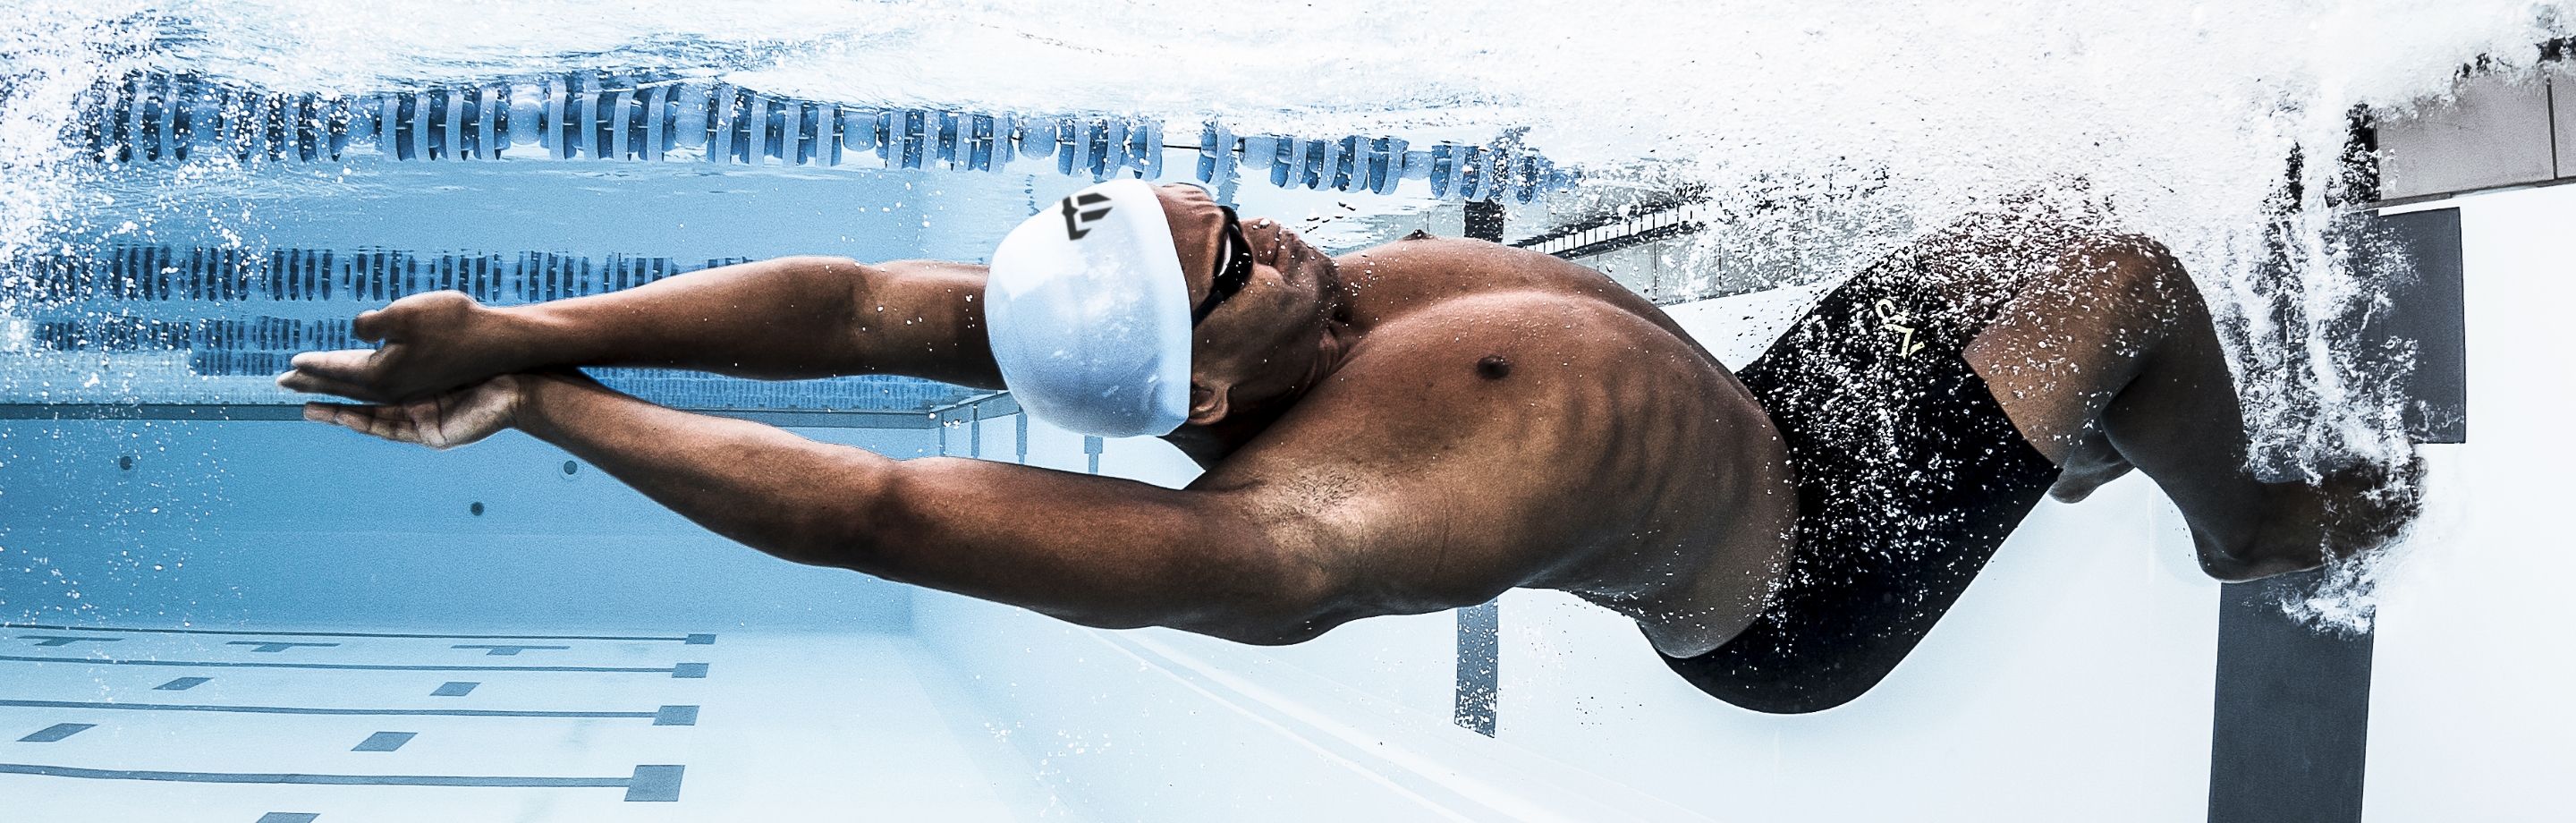 Phelps – Schwimmbekleidung und Equipment aus legendärer Hand